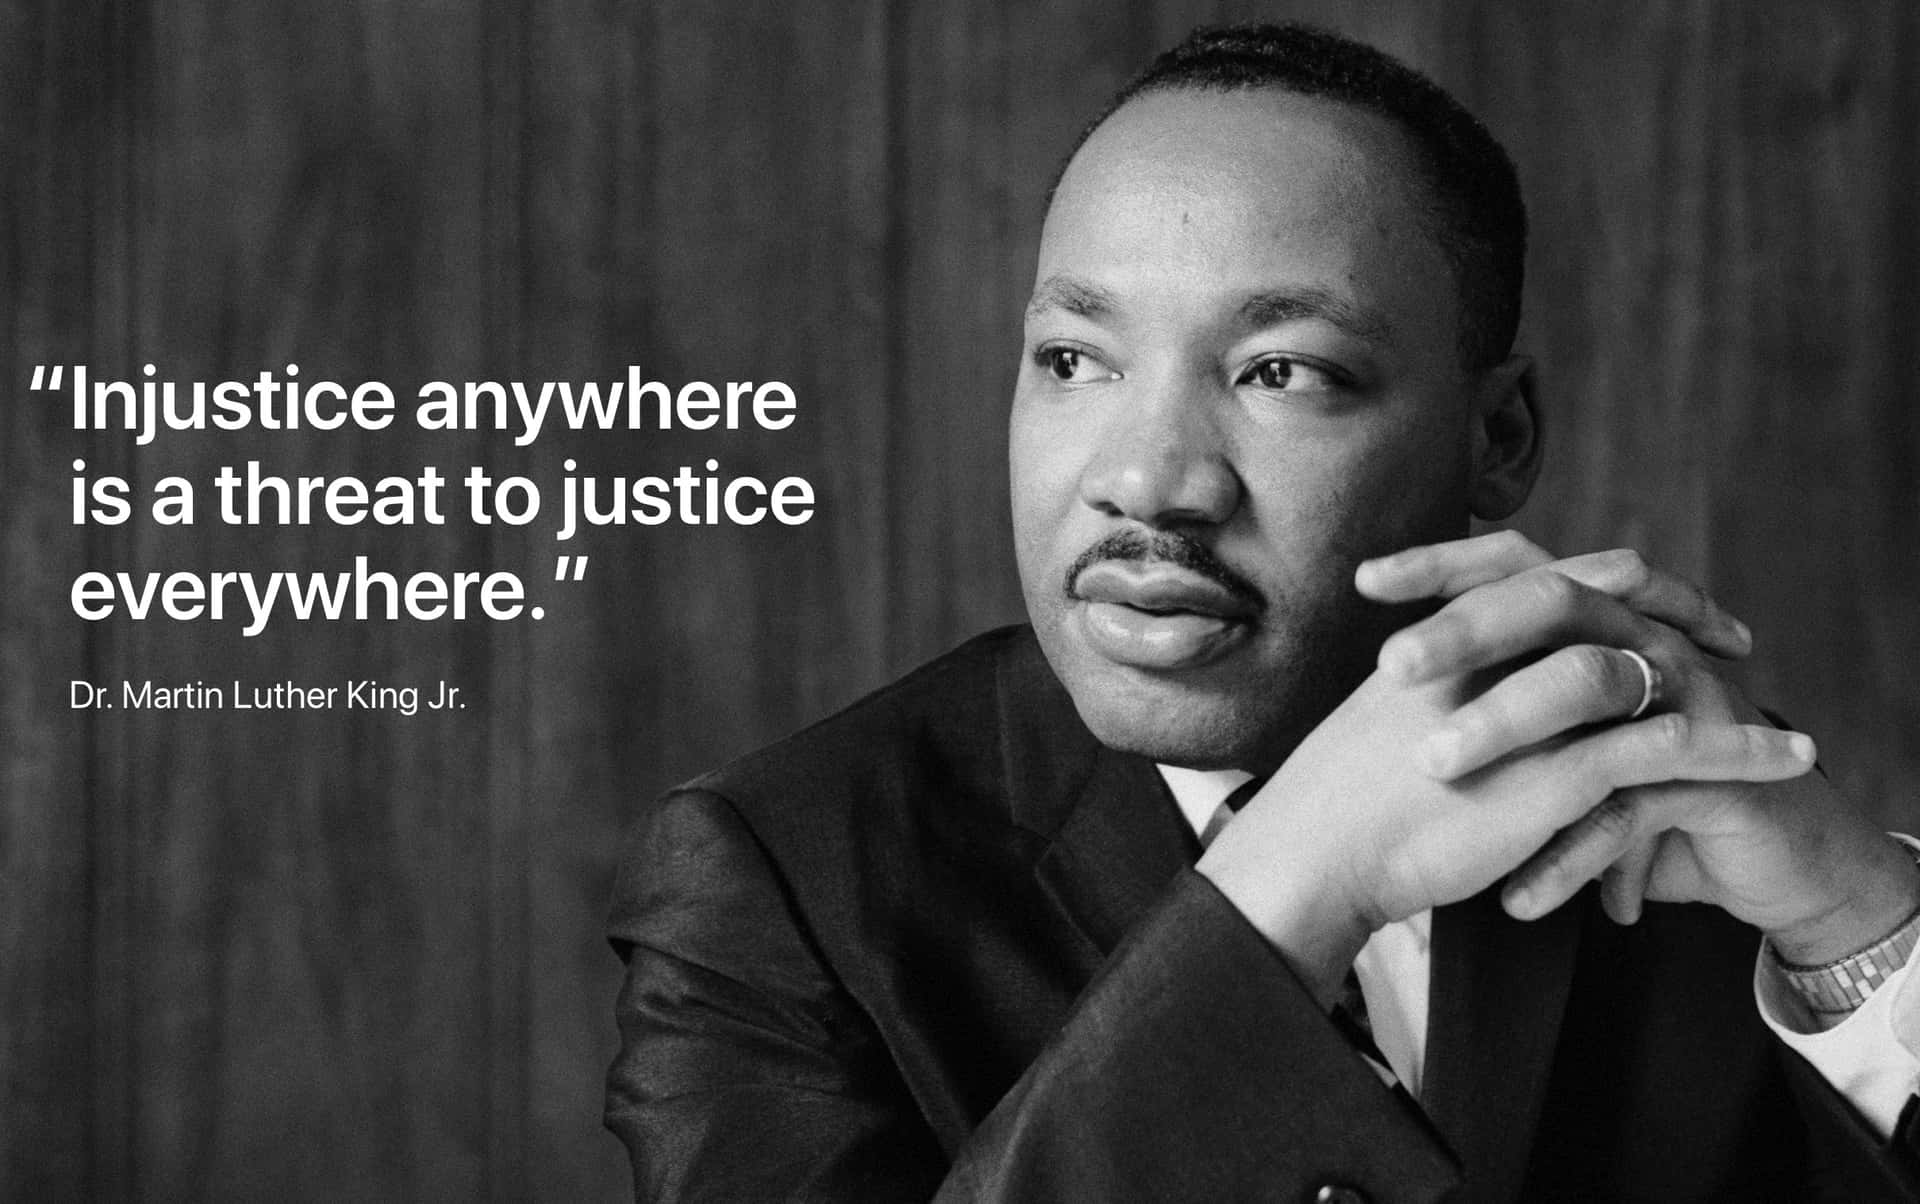 Citazionedi Martin Luther King Jr